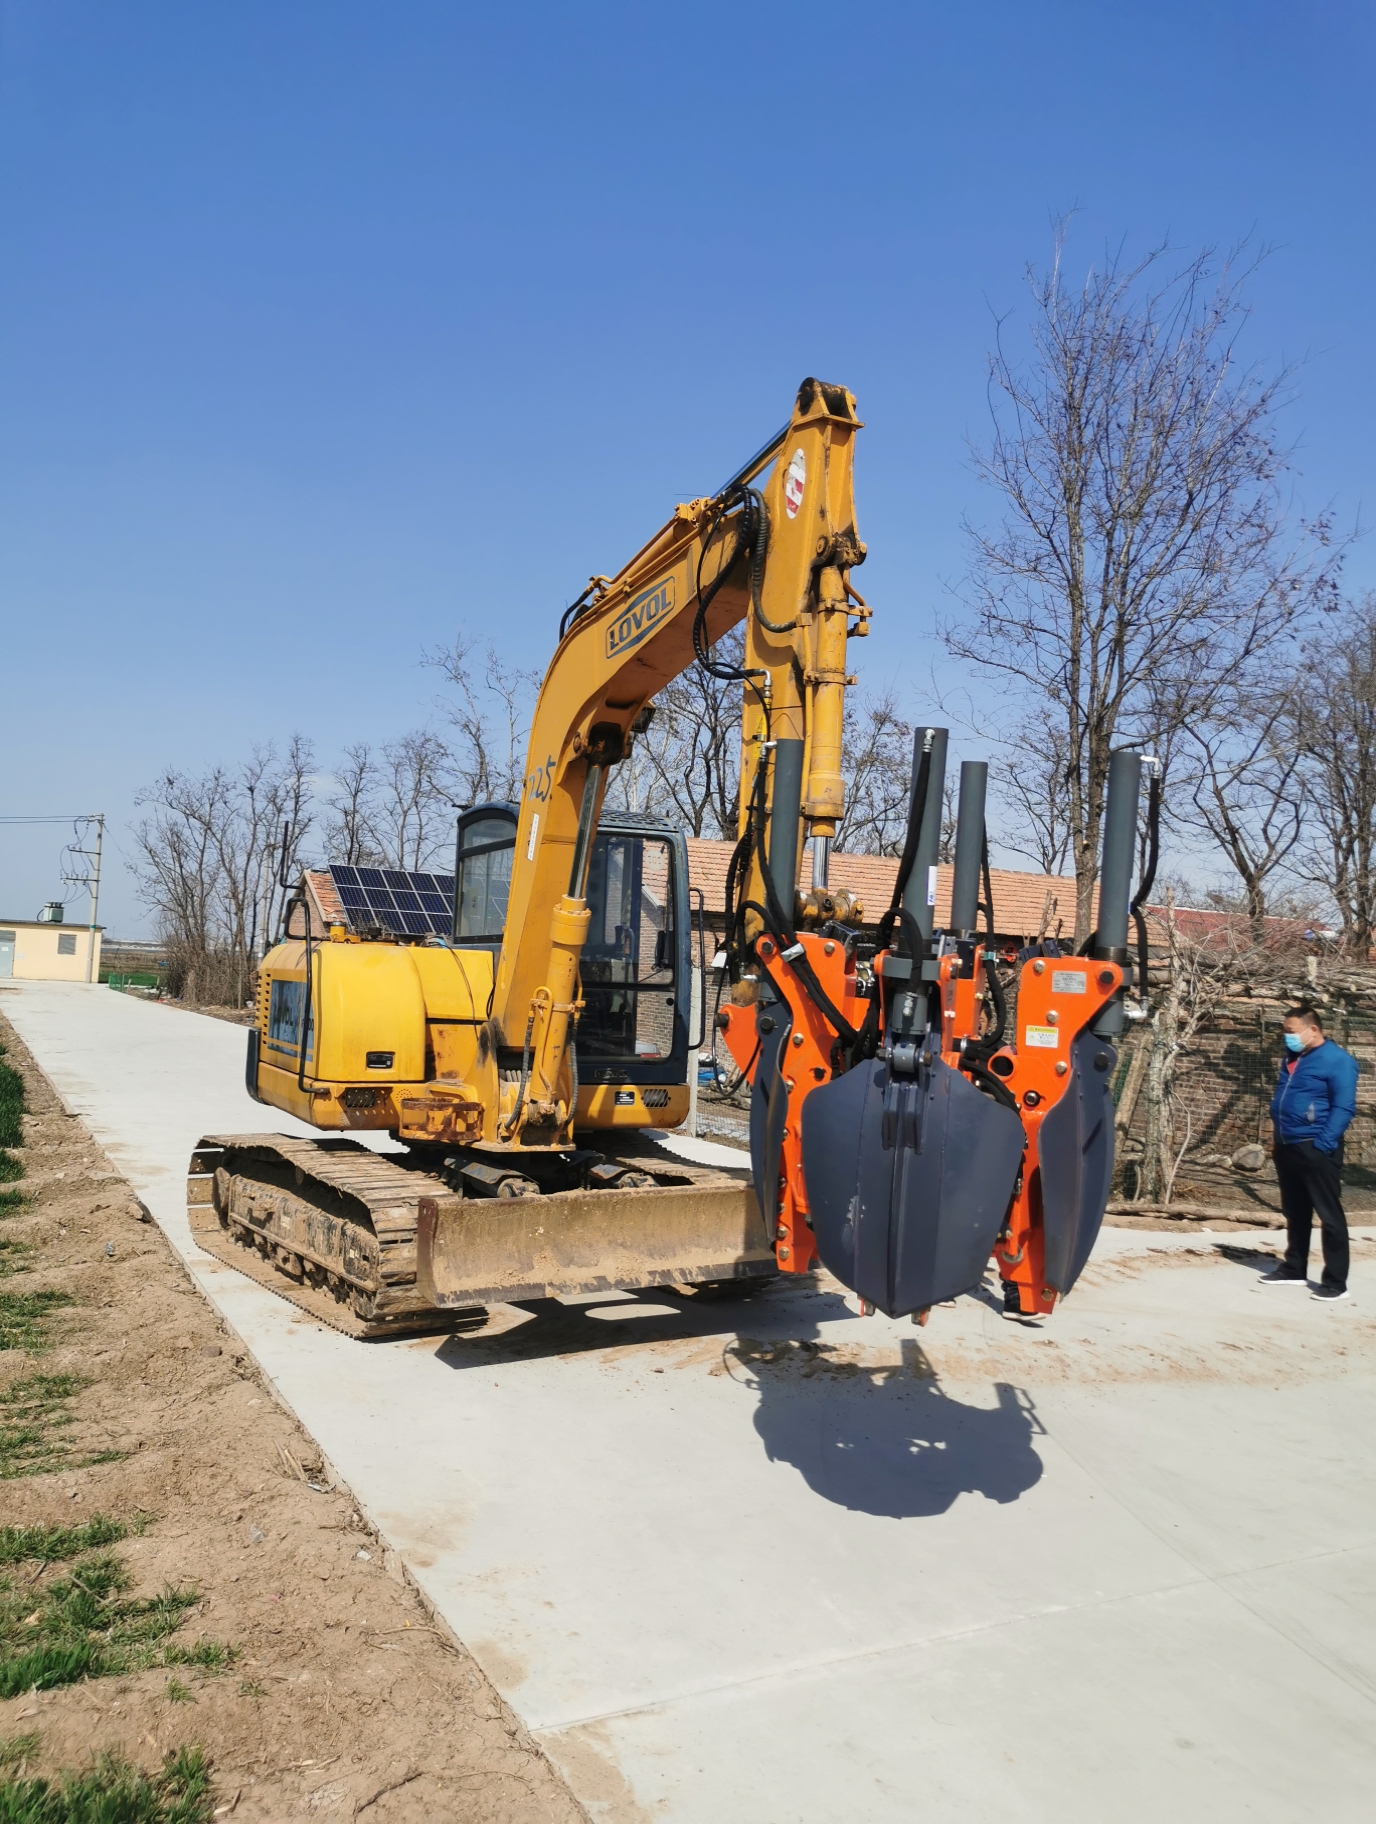 新疆乌鲁齐挖树机 带土坨四瓣式移树机 新型五瓣式挖树机 经久耐用